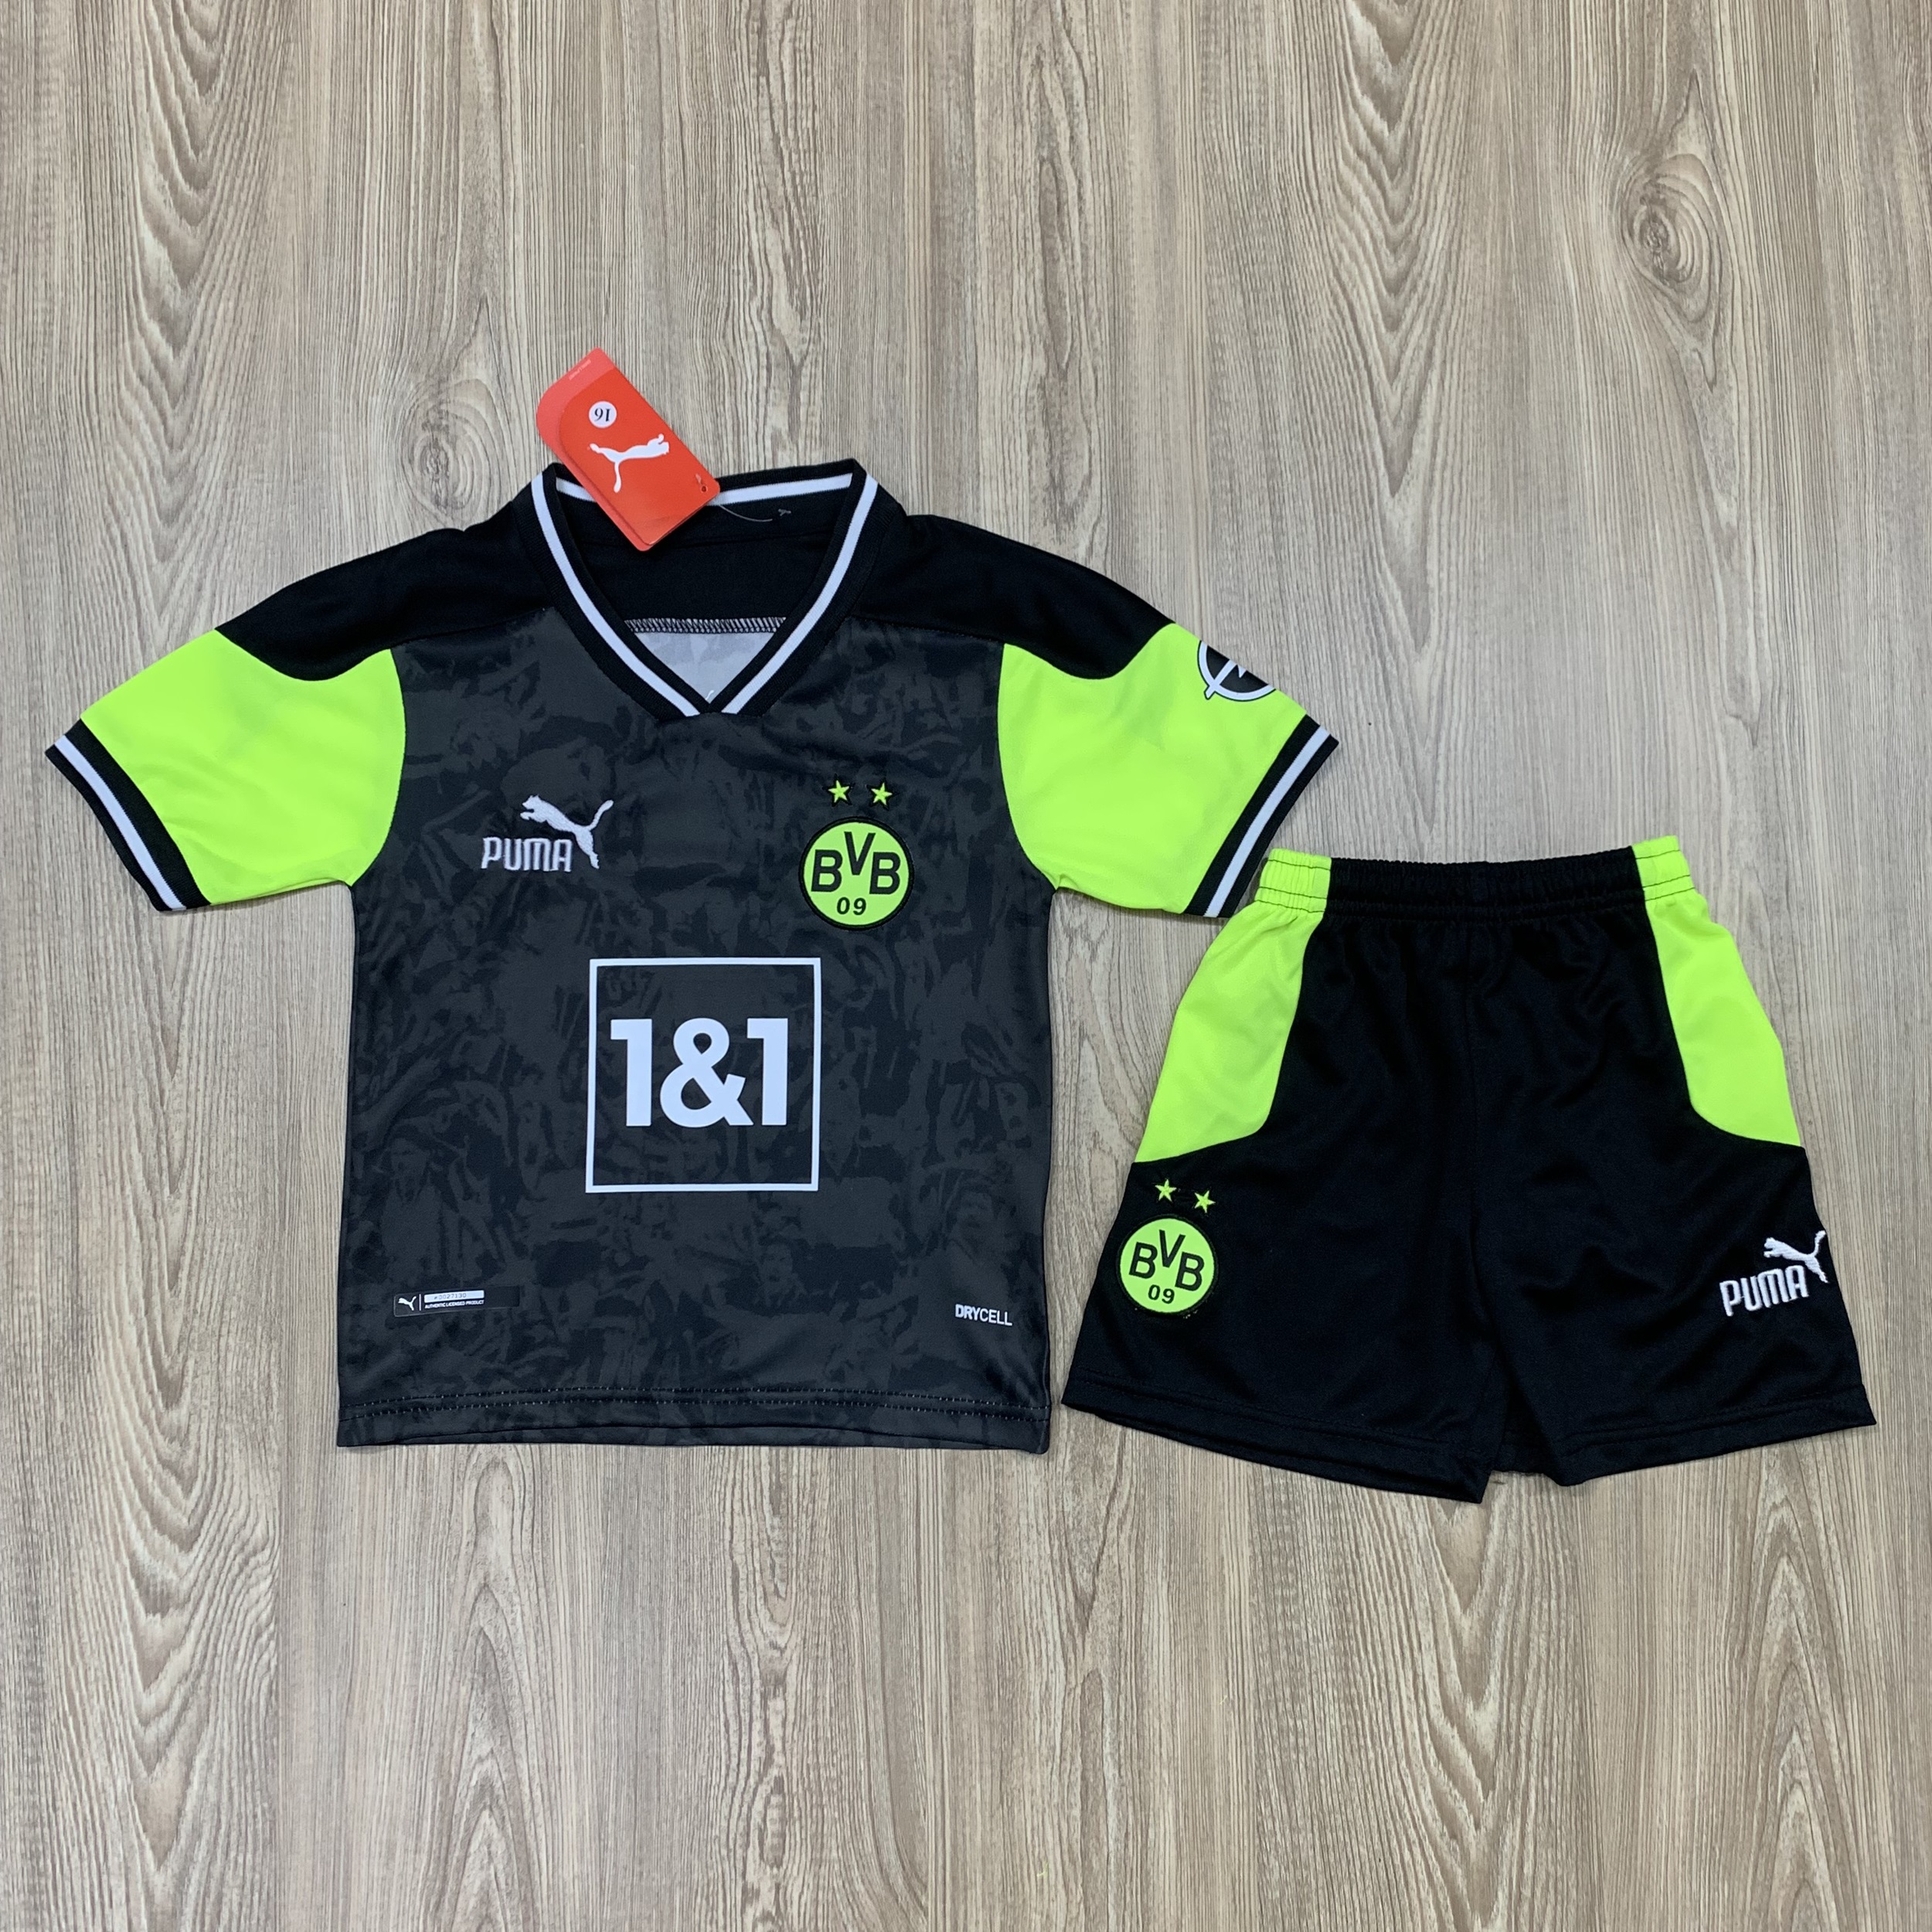 ชุดฟุตบอลเด็ก ชุดบอลเด็ก ชุดกีฬาเด็ก ชุดเด็ก เสื้อทีม Dortmund ซื้อครั้งเดียวได้ทั้งชุด (เสื้อ+กางเกง) ตัวเดียวในราคาส่ง สินค้าเกรด AAA